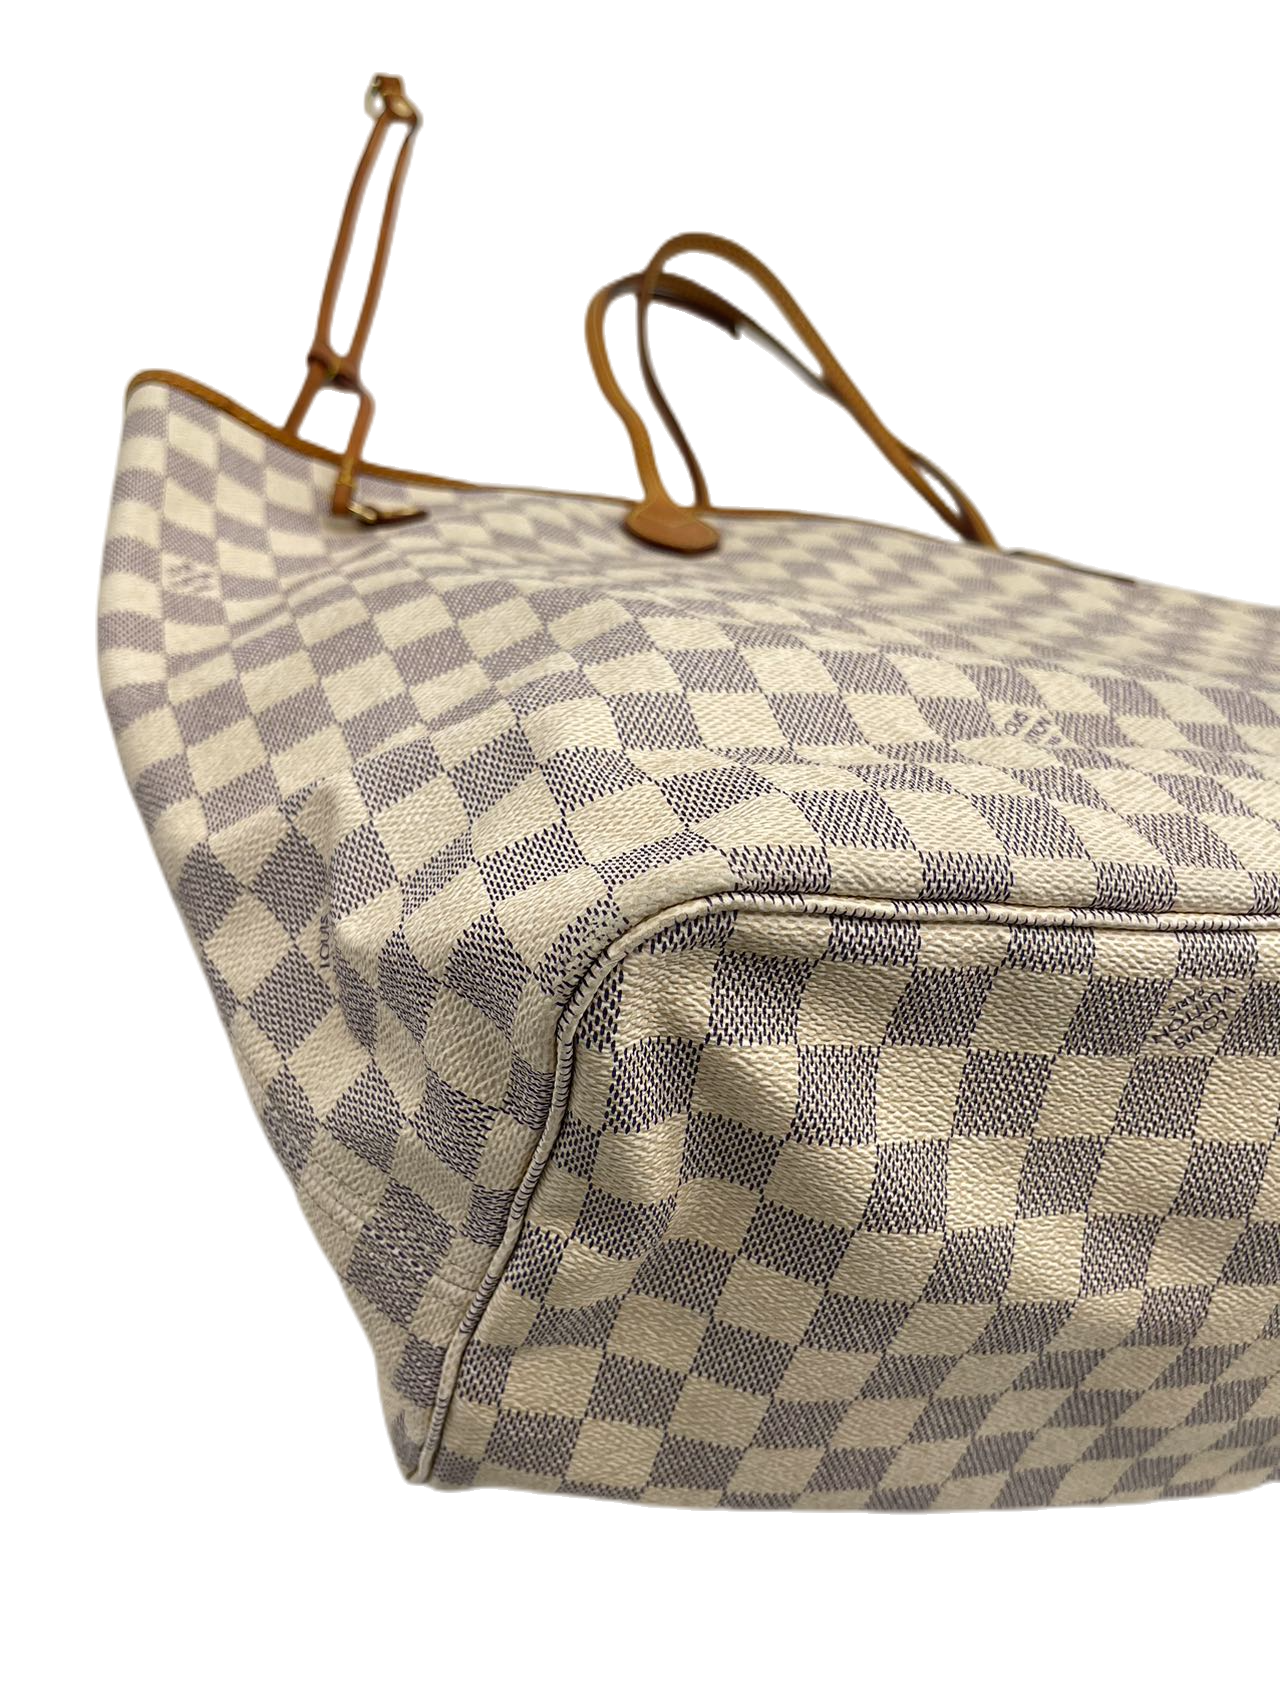 Preloved Louis Vuitton Damier Azur NeverFull GM Totes Shoulder Bag